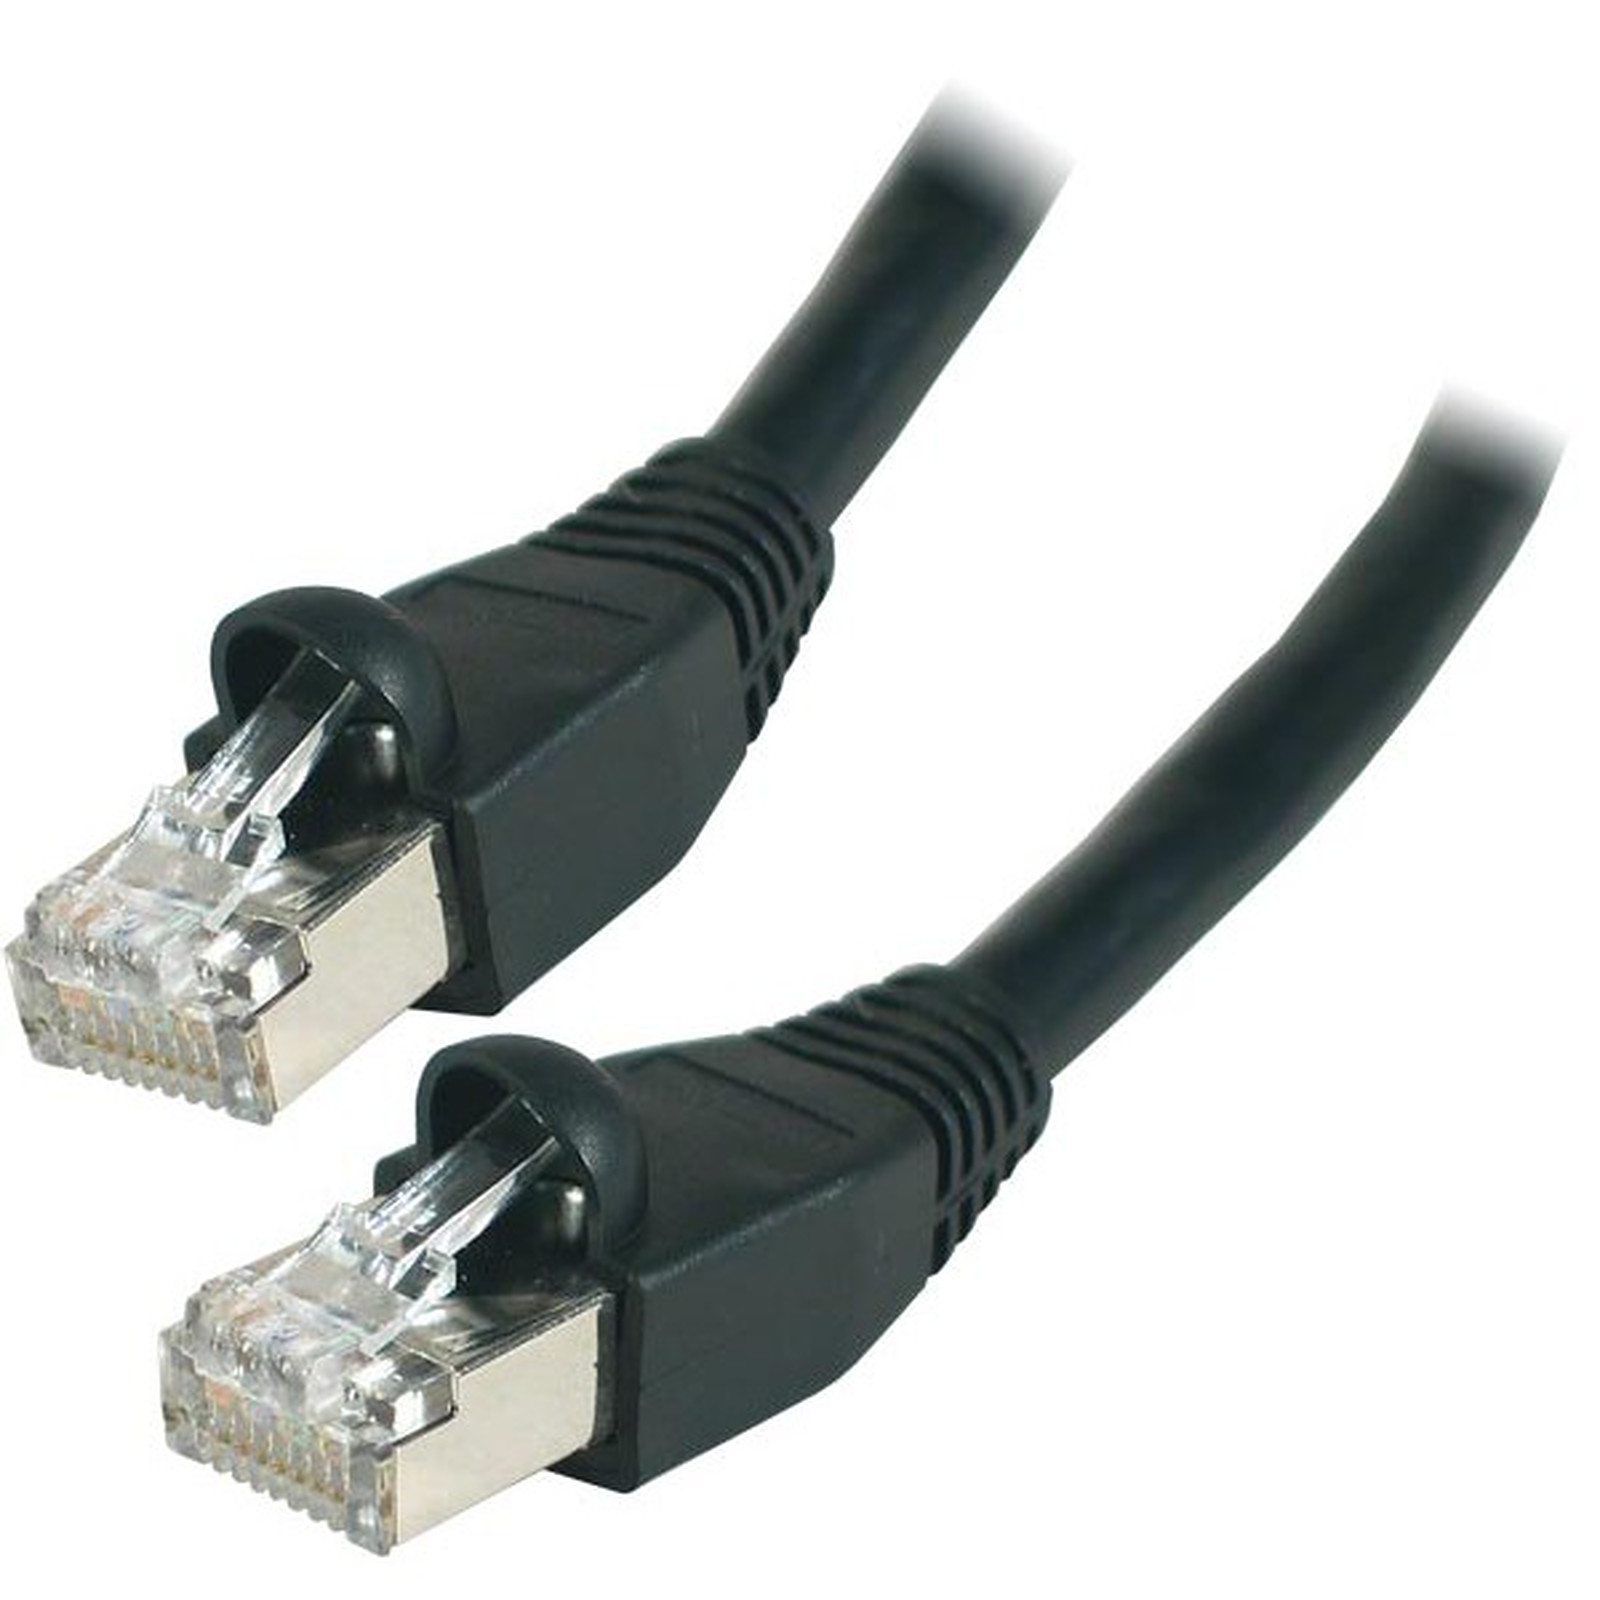 Cable RJ45 categorie 6 S/FTP 20 m (Noir) - Cable RJ45 Generique